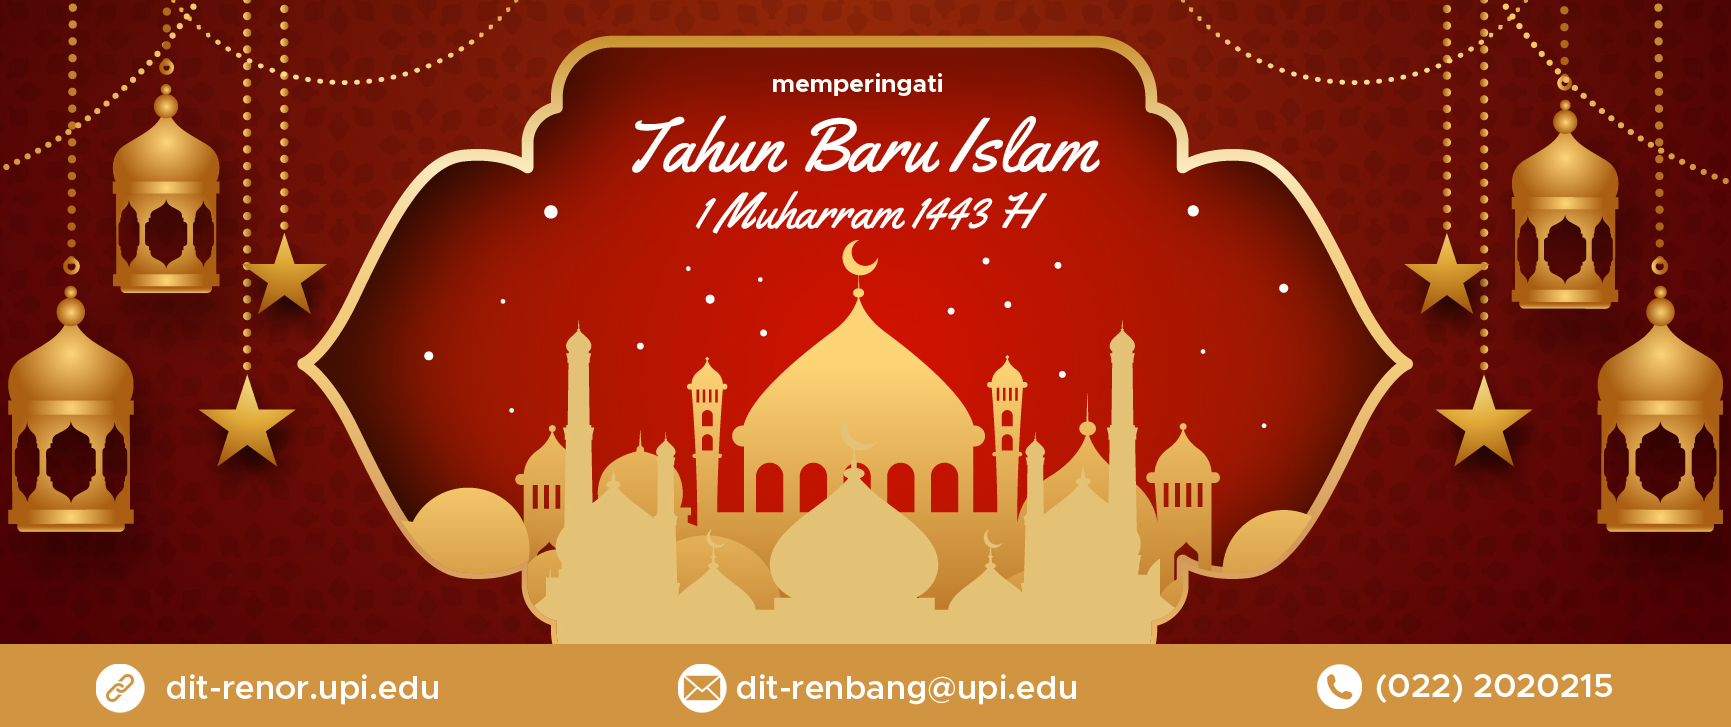 Read more about the article Memperingati Tahun Baru Islam 1 Muharram 1443 Hijriyah